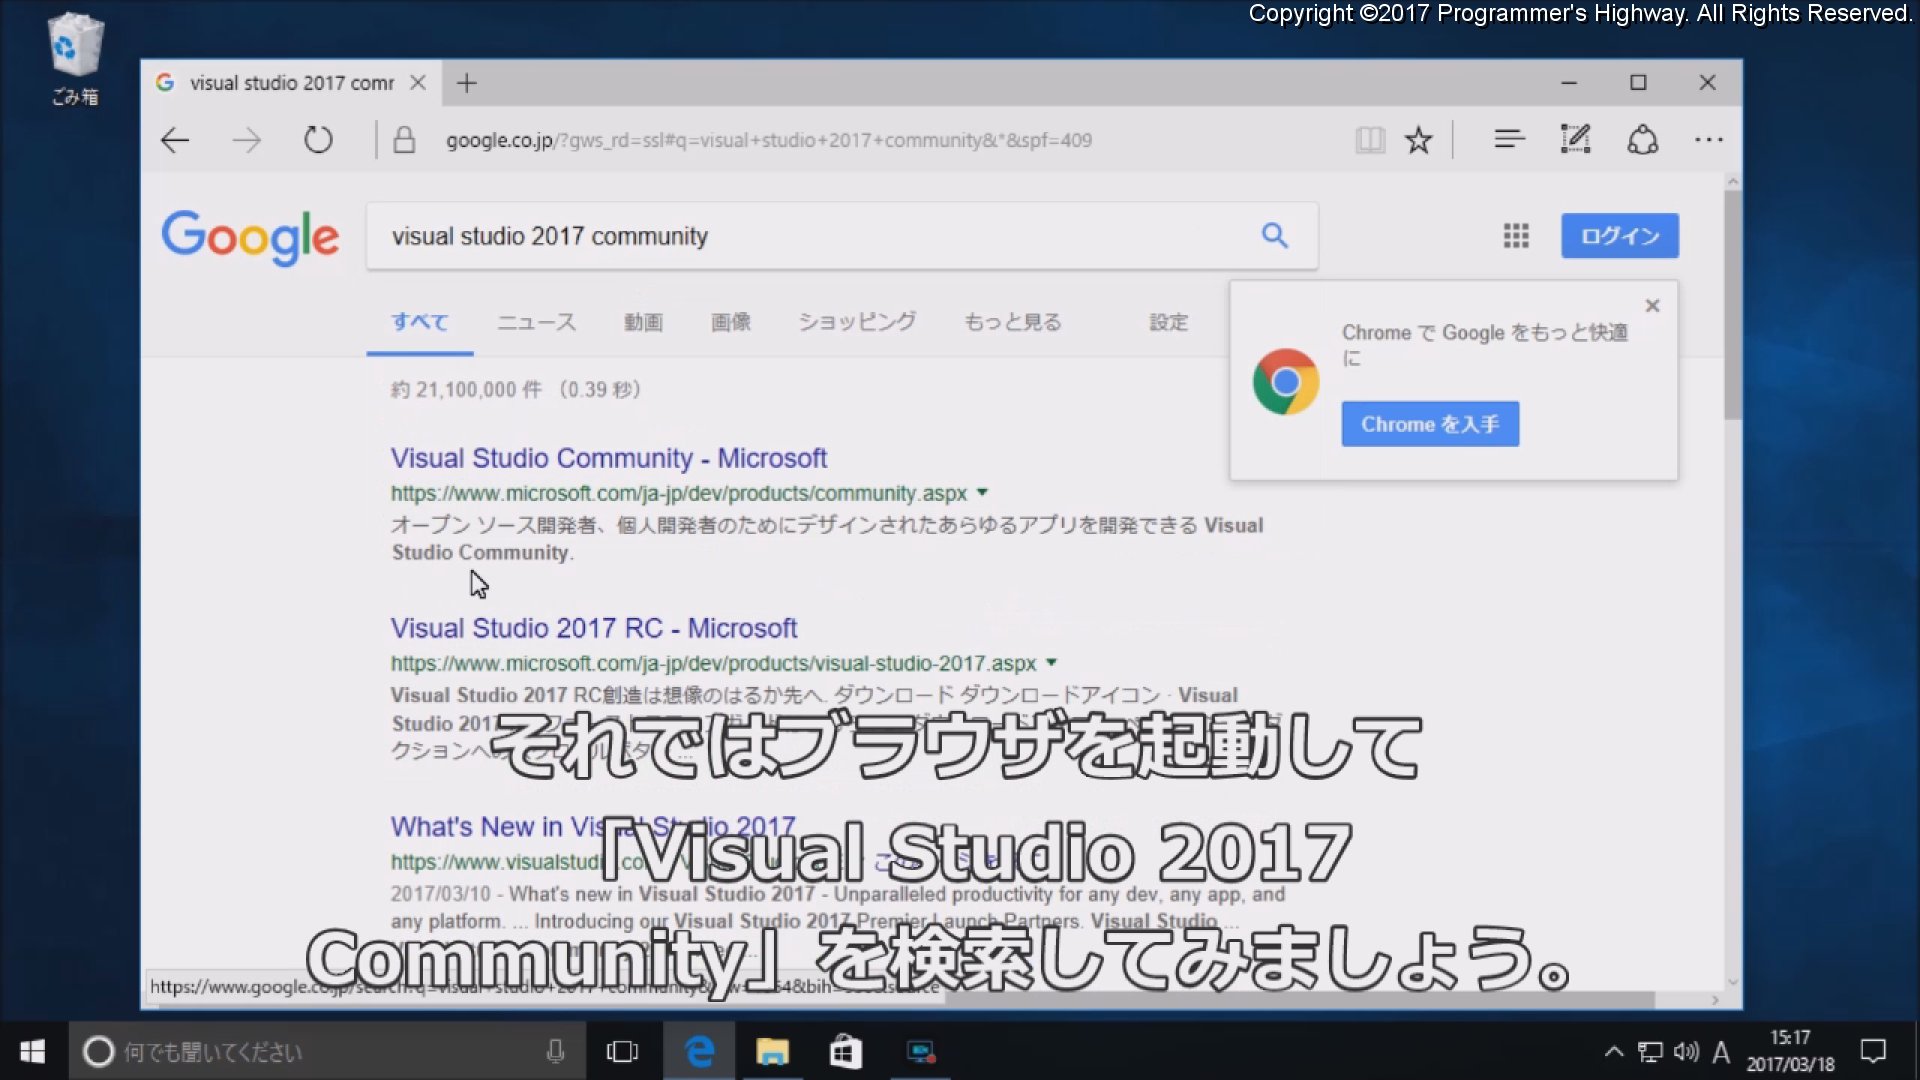 それではブラウザを起動して「Visual Studio 2017 Community」を検索してみましょう